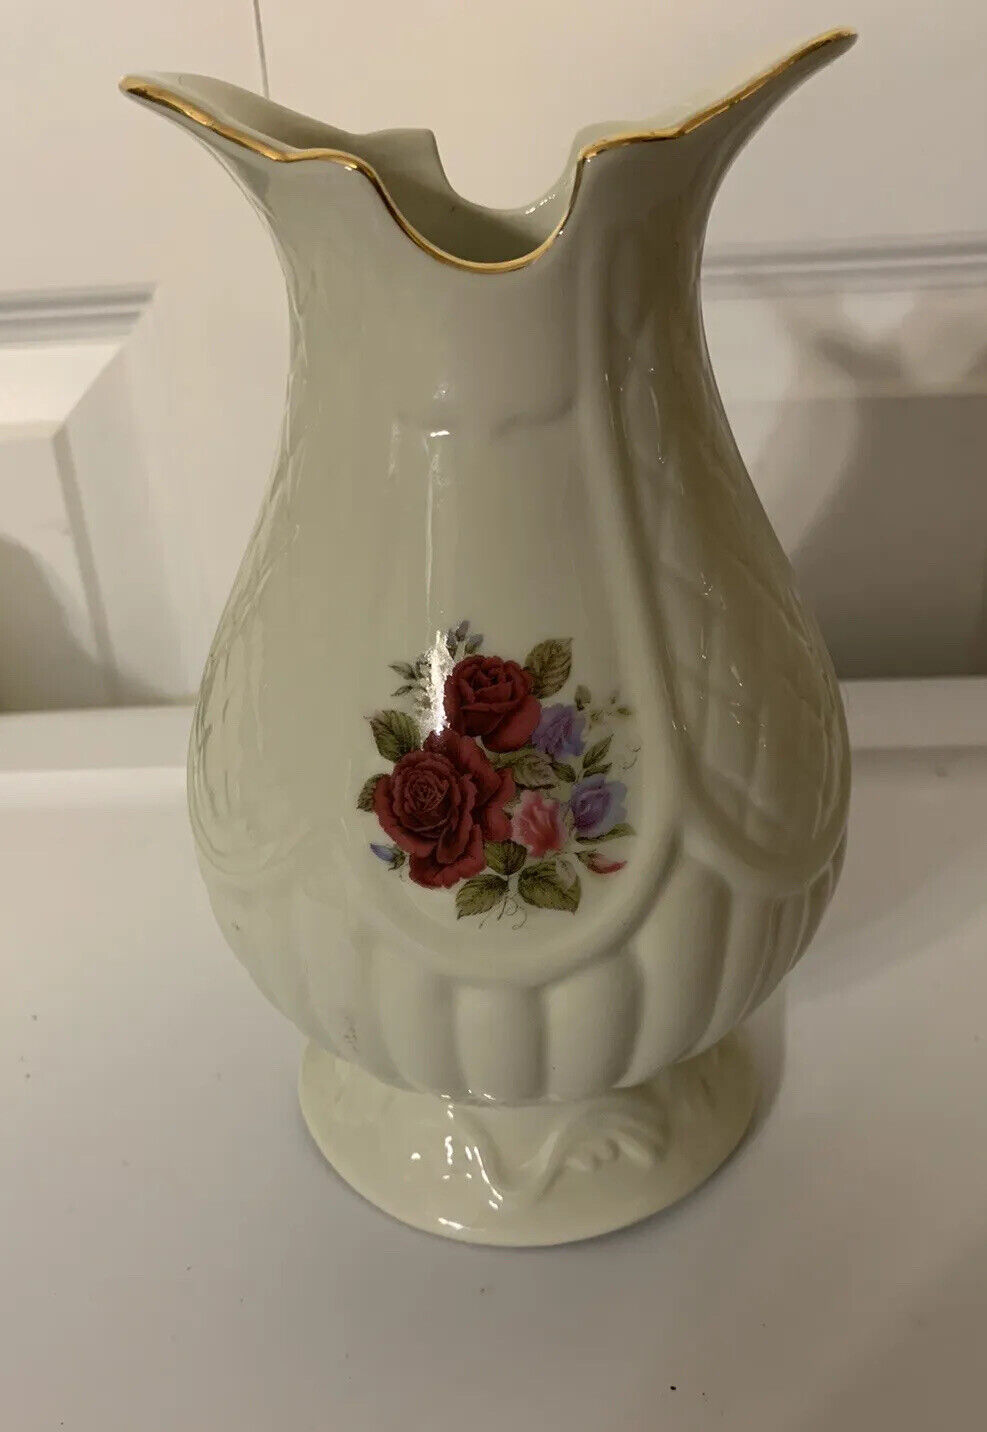 Vintage Formalities Vase by Baum Bros